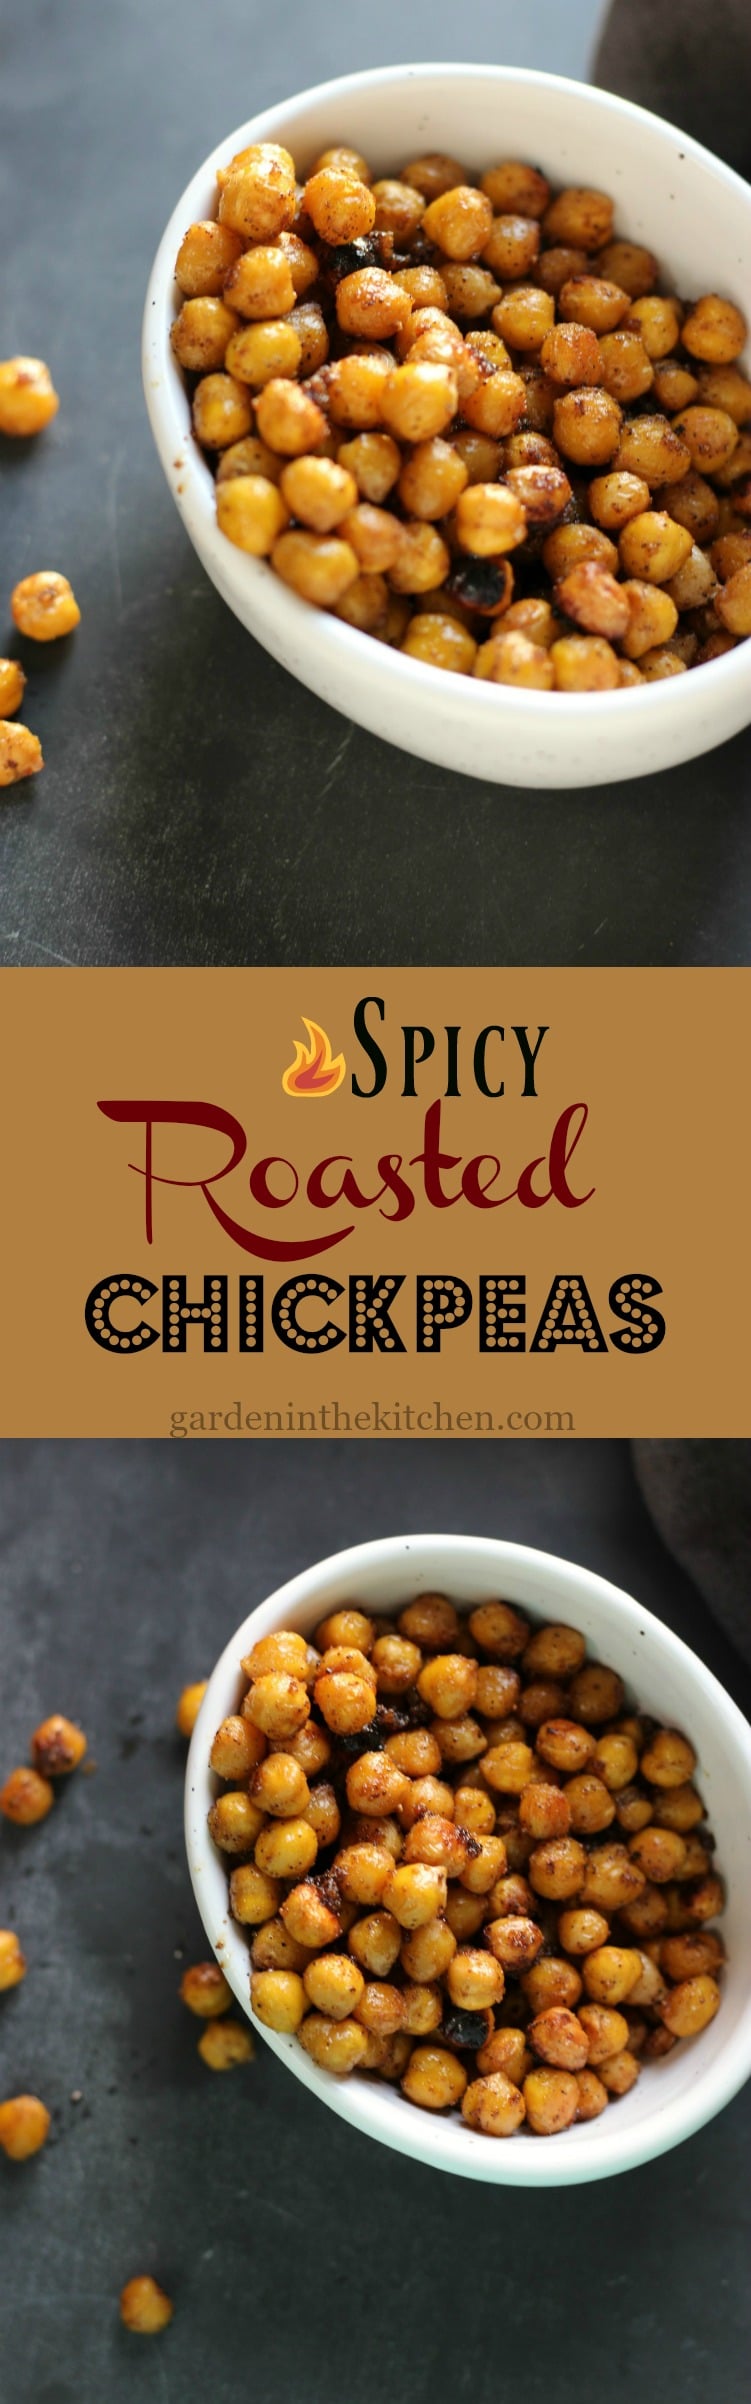 Spicy Roasted Chickpeas | gardeninthekitchen.com